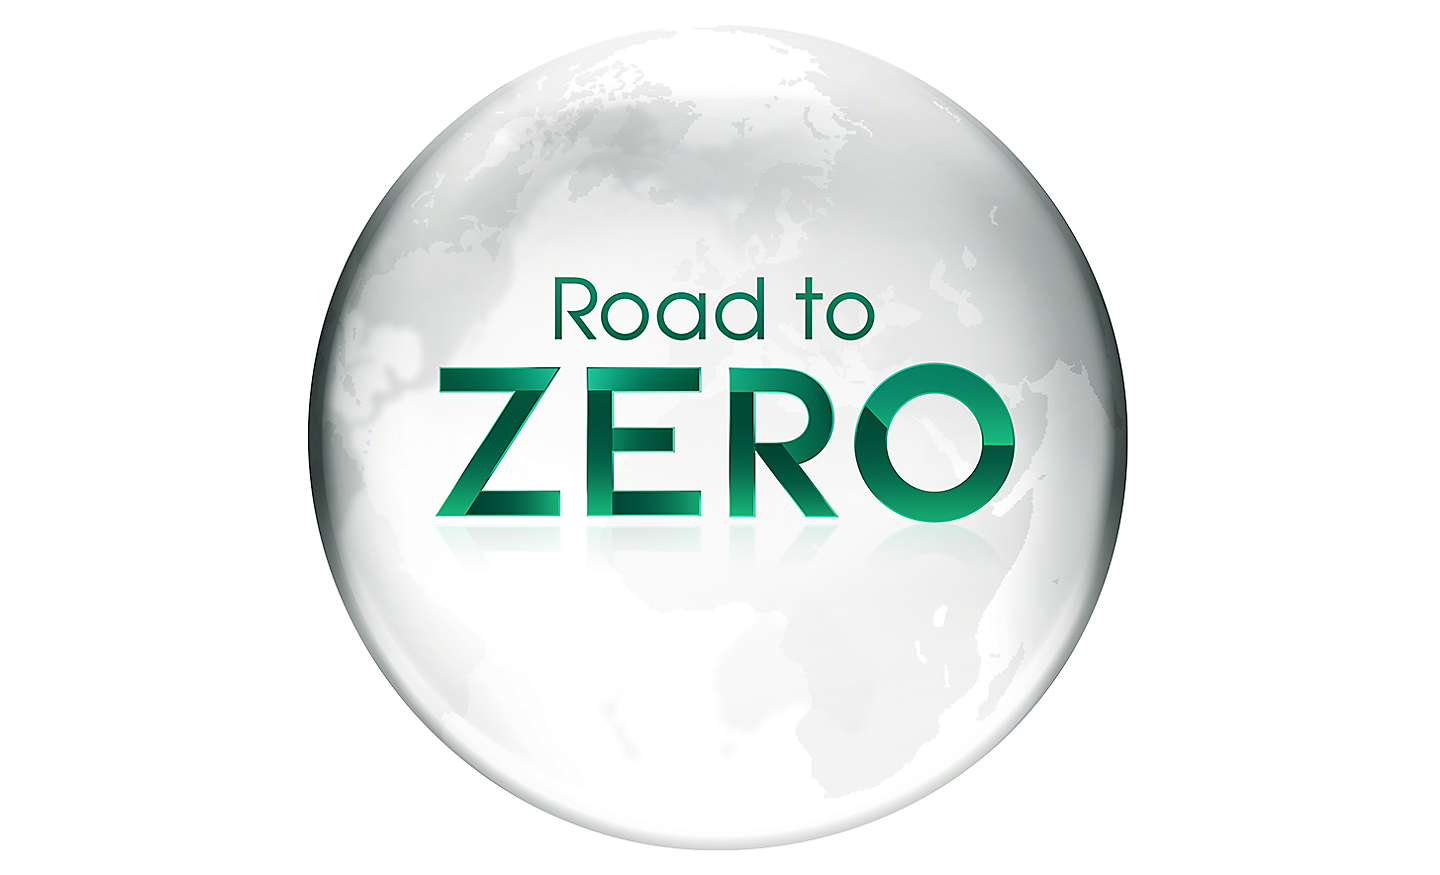 Road to Zero 的標示